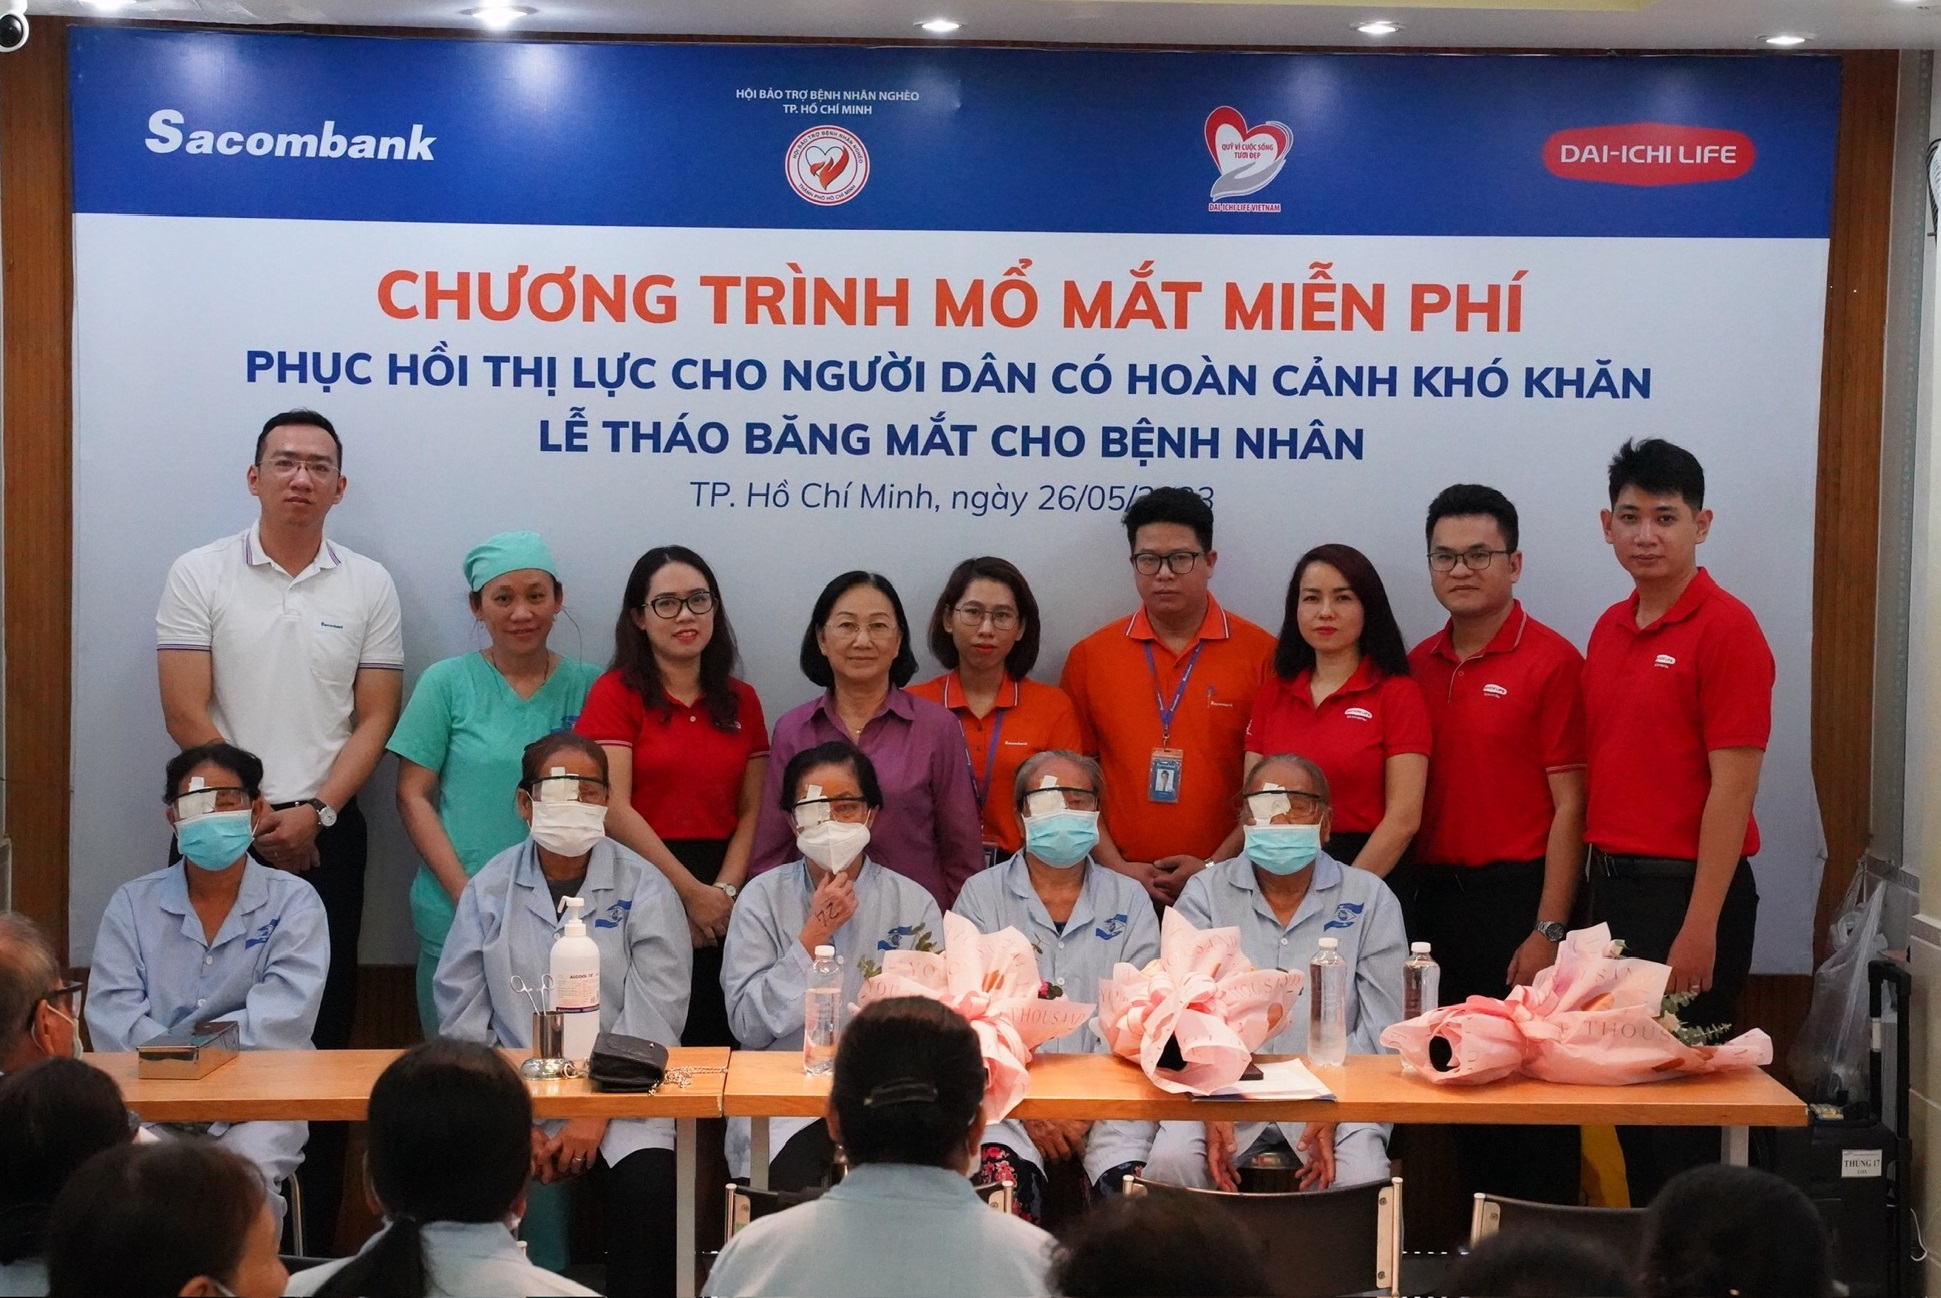 Chương trình mổ mắt miễn phí cho các bệnh nhân tại tỉnh Tây Ninh được thực hiện tại TP.HCM nhằm đảm bảo cơ sở vật chất